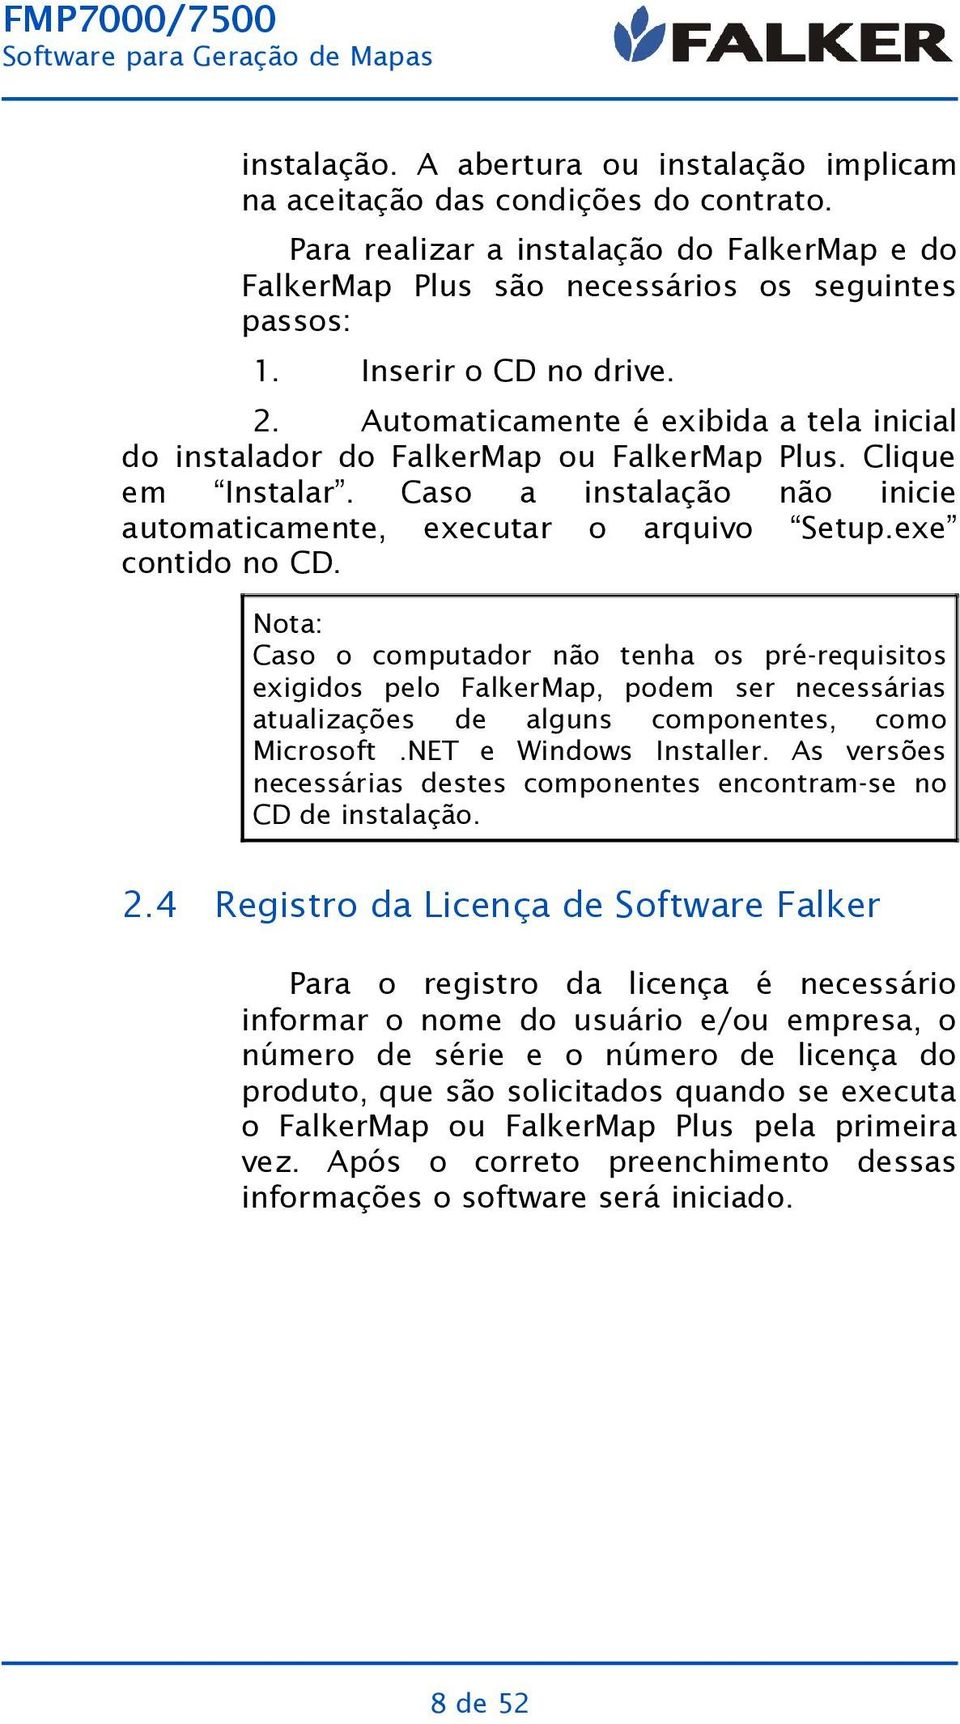 Clique não inicie Setup.exe Nota: Caso o computador não tenha os pré-requisitos exigidos pelo FalkerMap, podem ser necessárias atualizações de alguns componentes, como Microsoft.